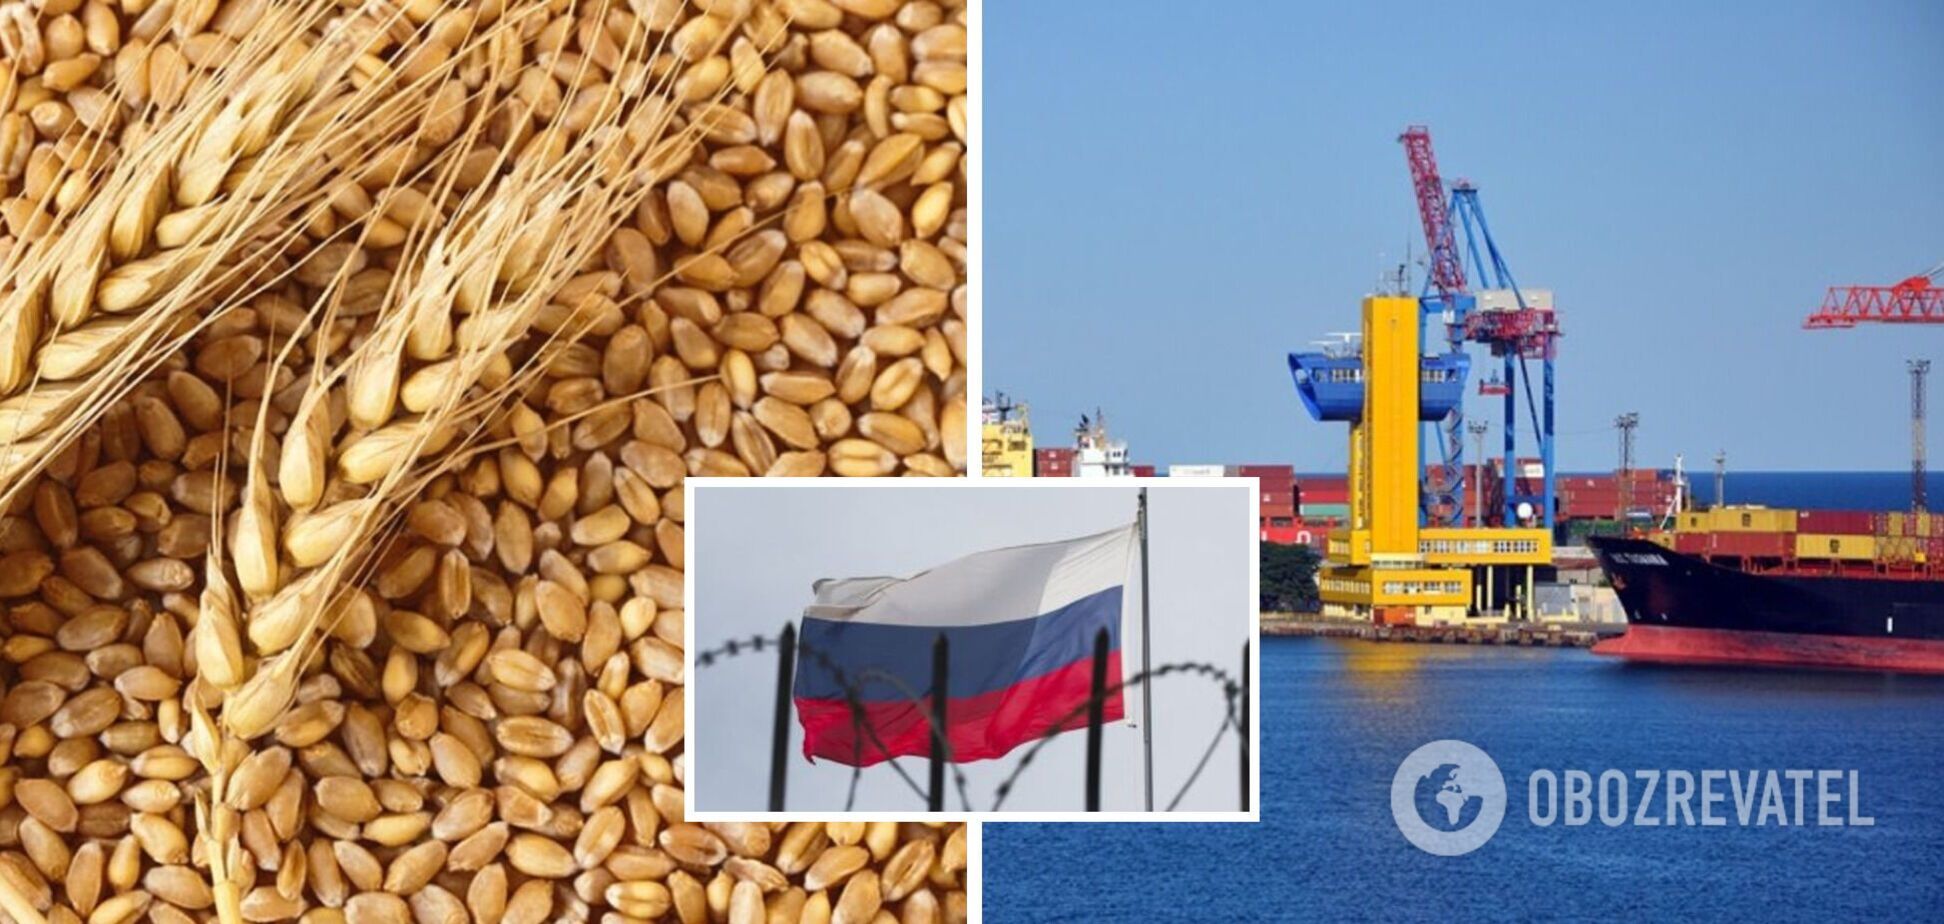 Останній корабель вийшов з України в рамках 'зернової угоди'